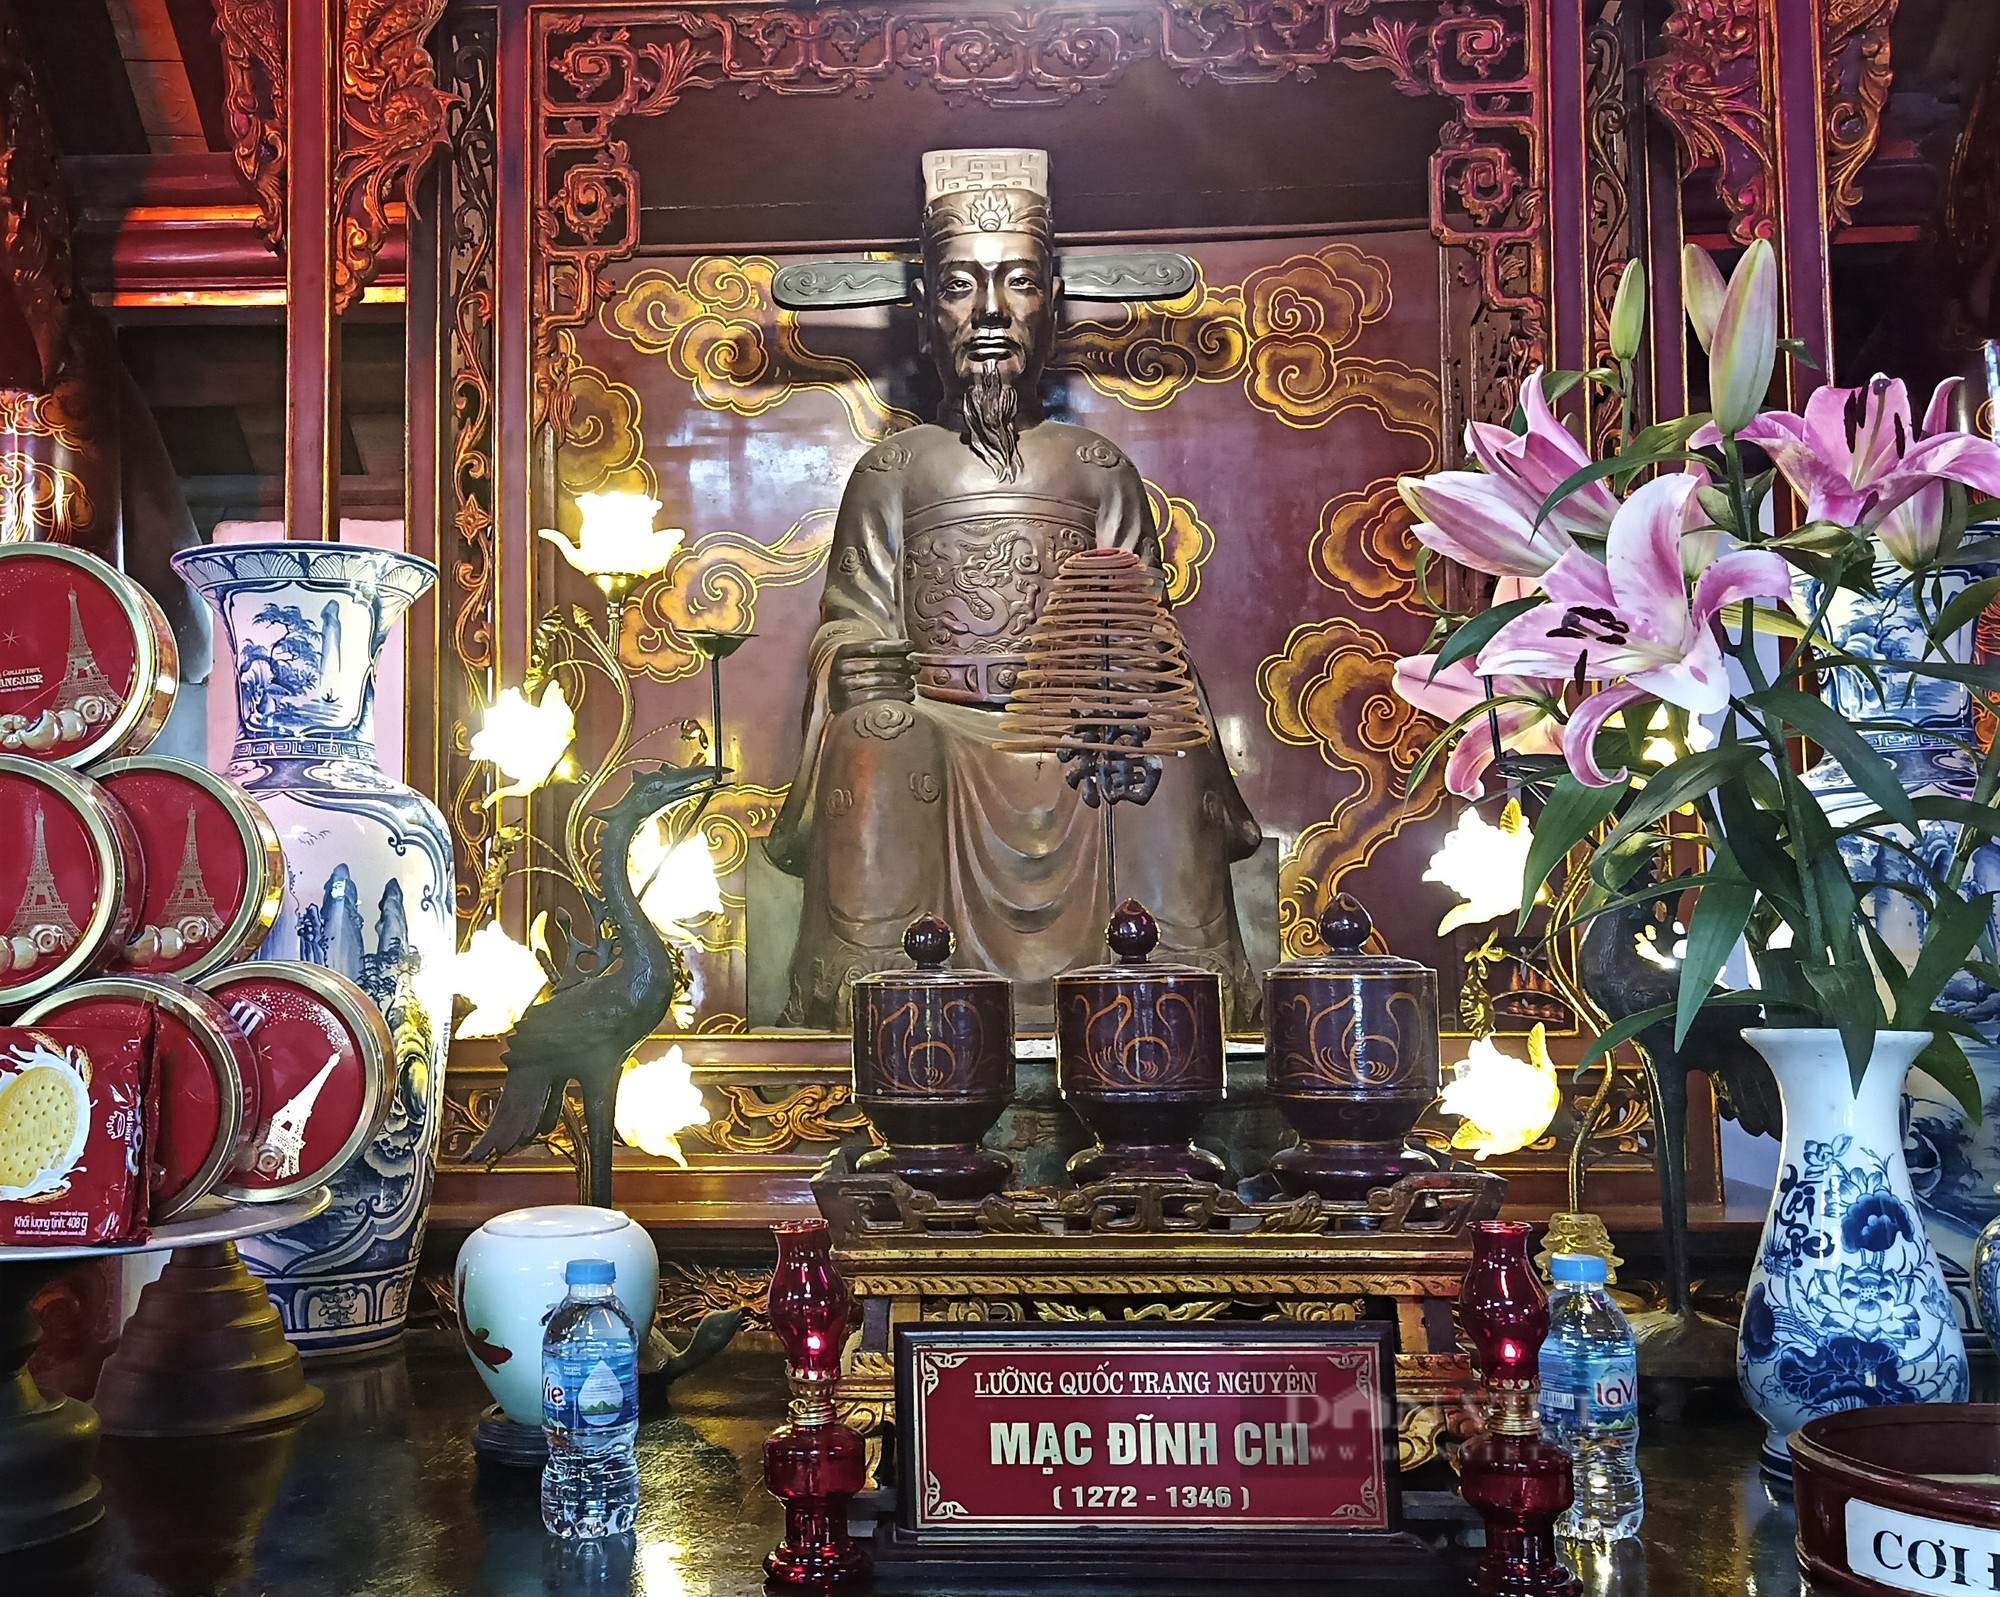 Lễ hội Văn Miếu Mao Điền, tri ân ông tổ đạo Nho và 8 bậc đại khoa tiêu biểu ở Hải Dương - Ảnh 6.